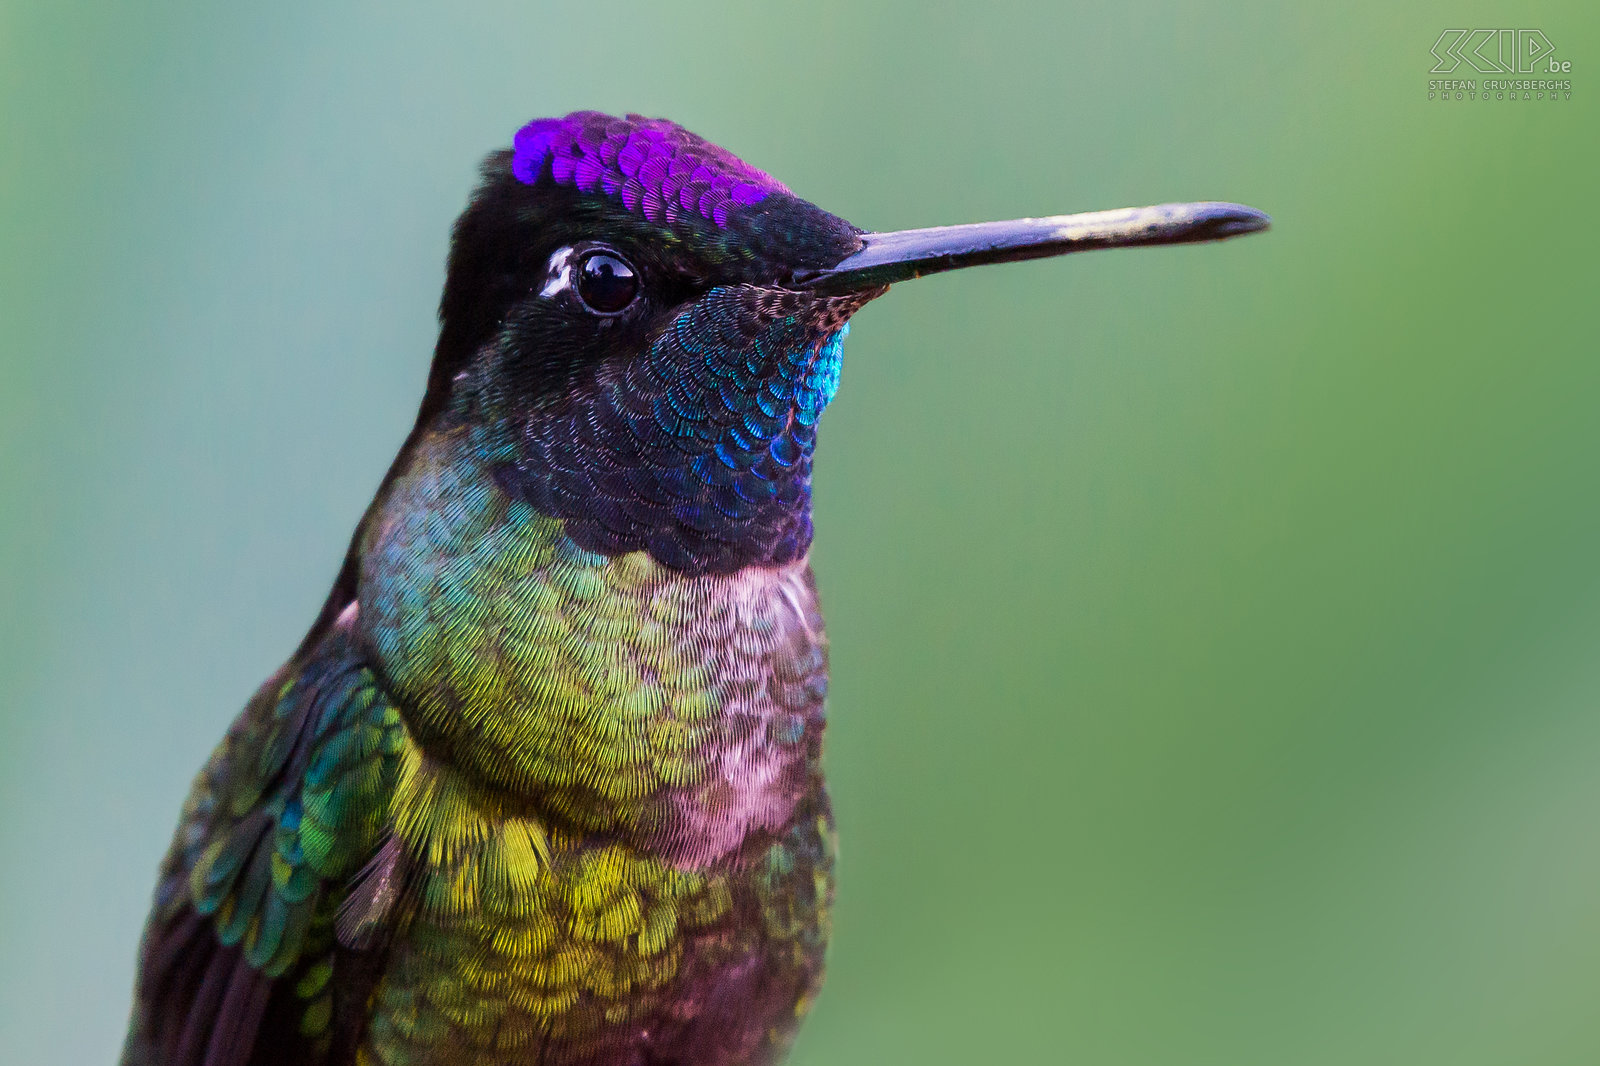 San Gerardo de Dota - Closeup Rivoli's kolibrie Close-up van een Rivoli's kolibrie (magnificent hummingbird, eugenes fulgens) in de vallei van San Gerardo de Dota in Costa Rica. De Rivoli's kolibrie is een vrij grote kolibrie (11-14 cm). Het volwassen mannetje is groen-brons met een paarse kroon, een helder blauw-groene keel en de rest van het hoofd is zwart met een witte vlek achter het oog. Het belangrijkste voedsel van deze kolibrie is nectar en soms wat kleine insecten. Stefan Cruysberghs